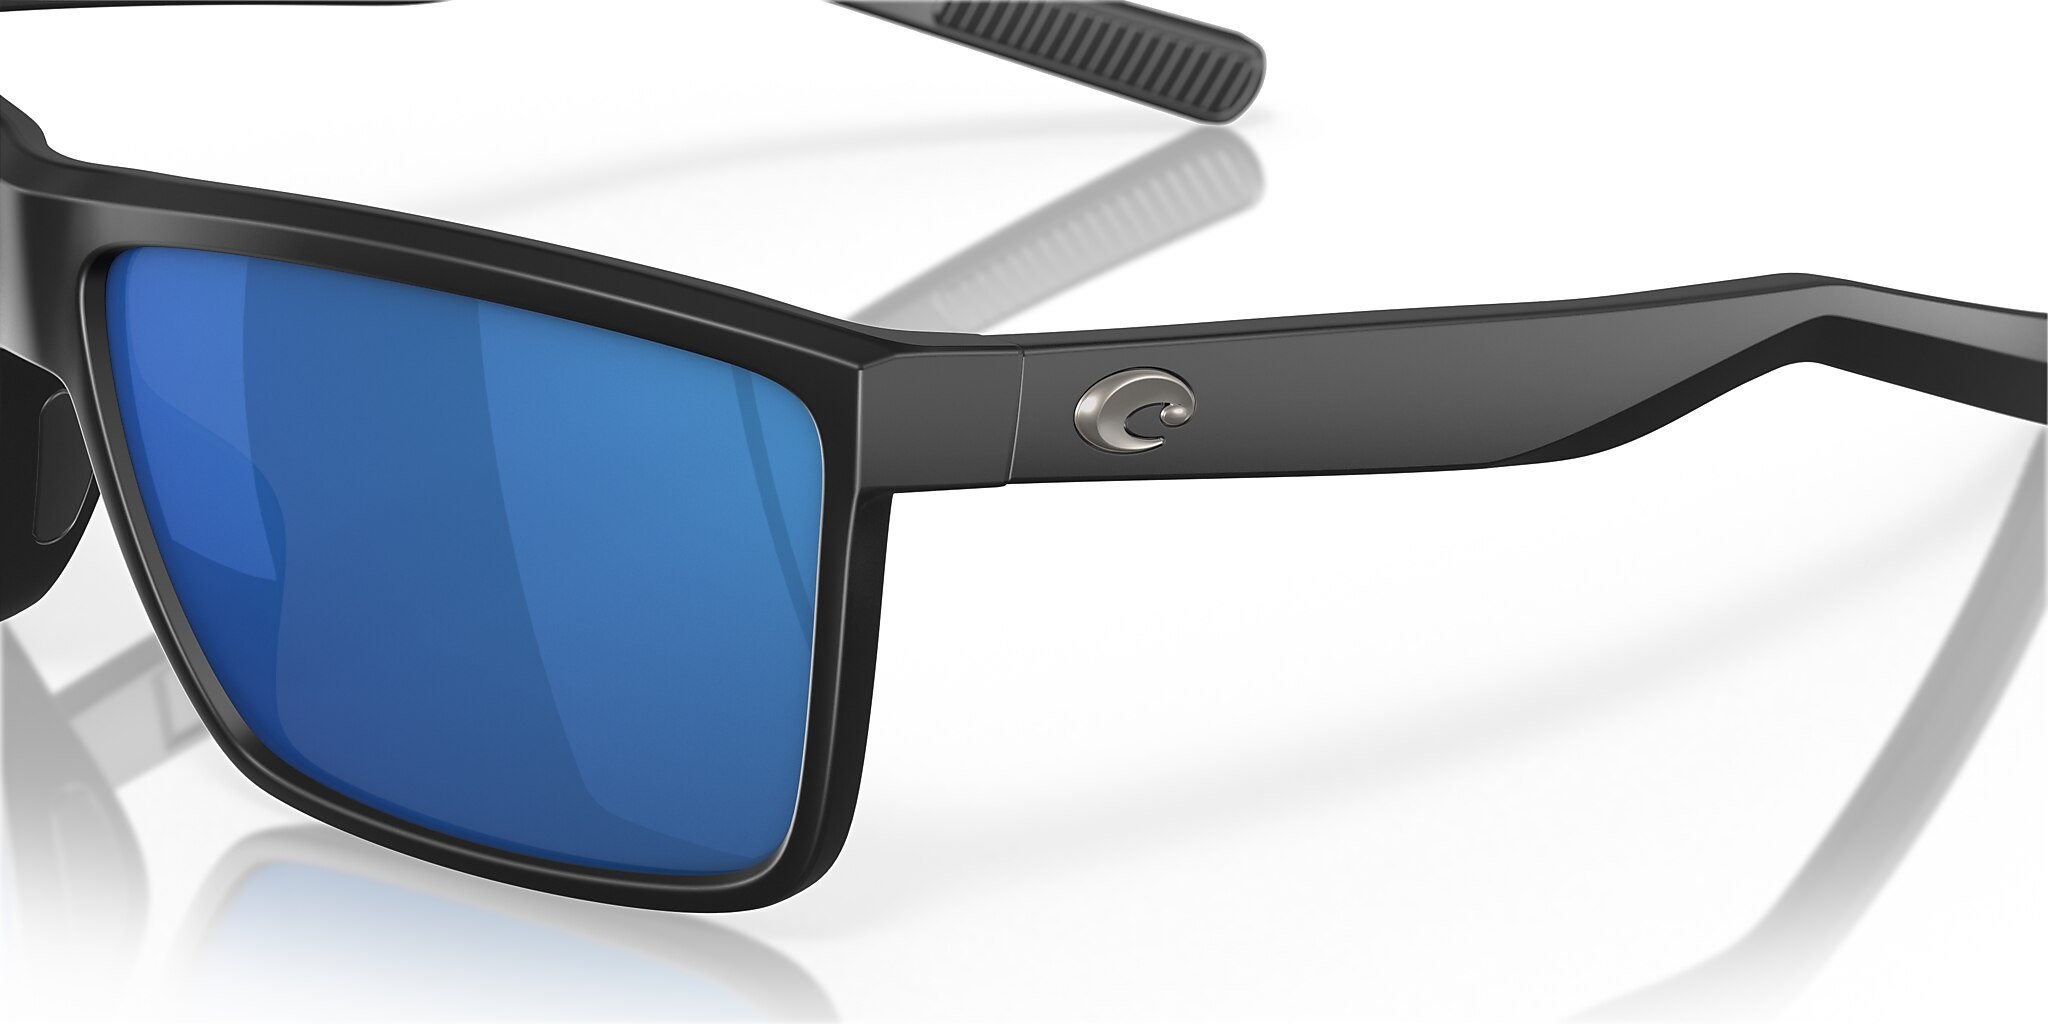 Rinconcito Polarized Sunglasses in Blue Mirror | Costa Del Mar®